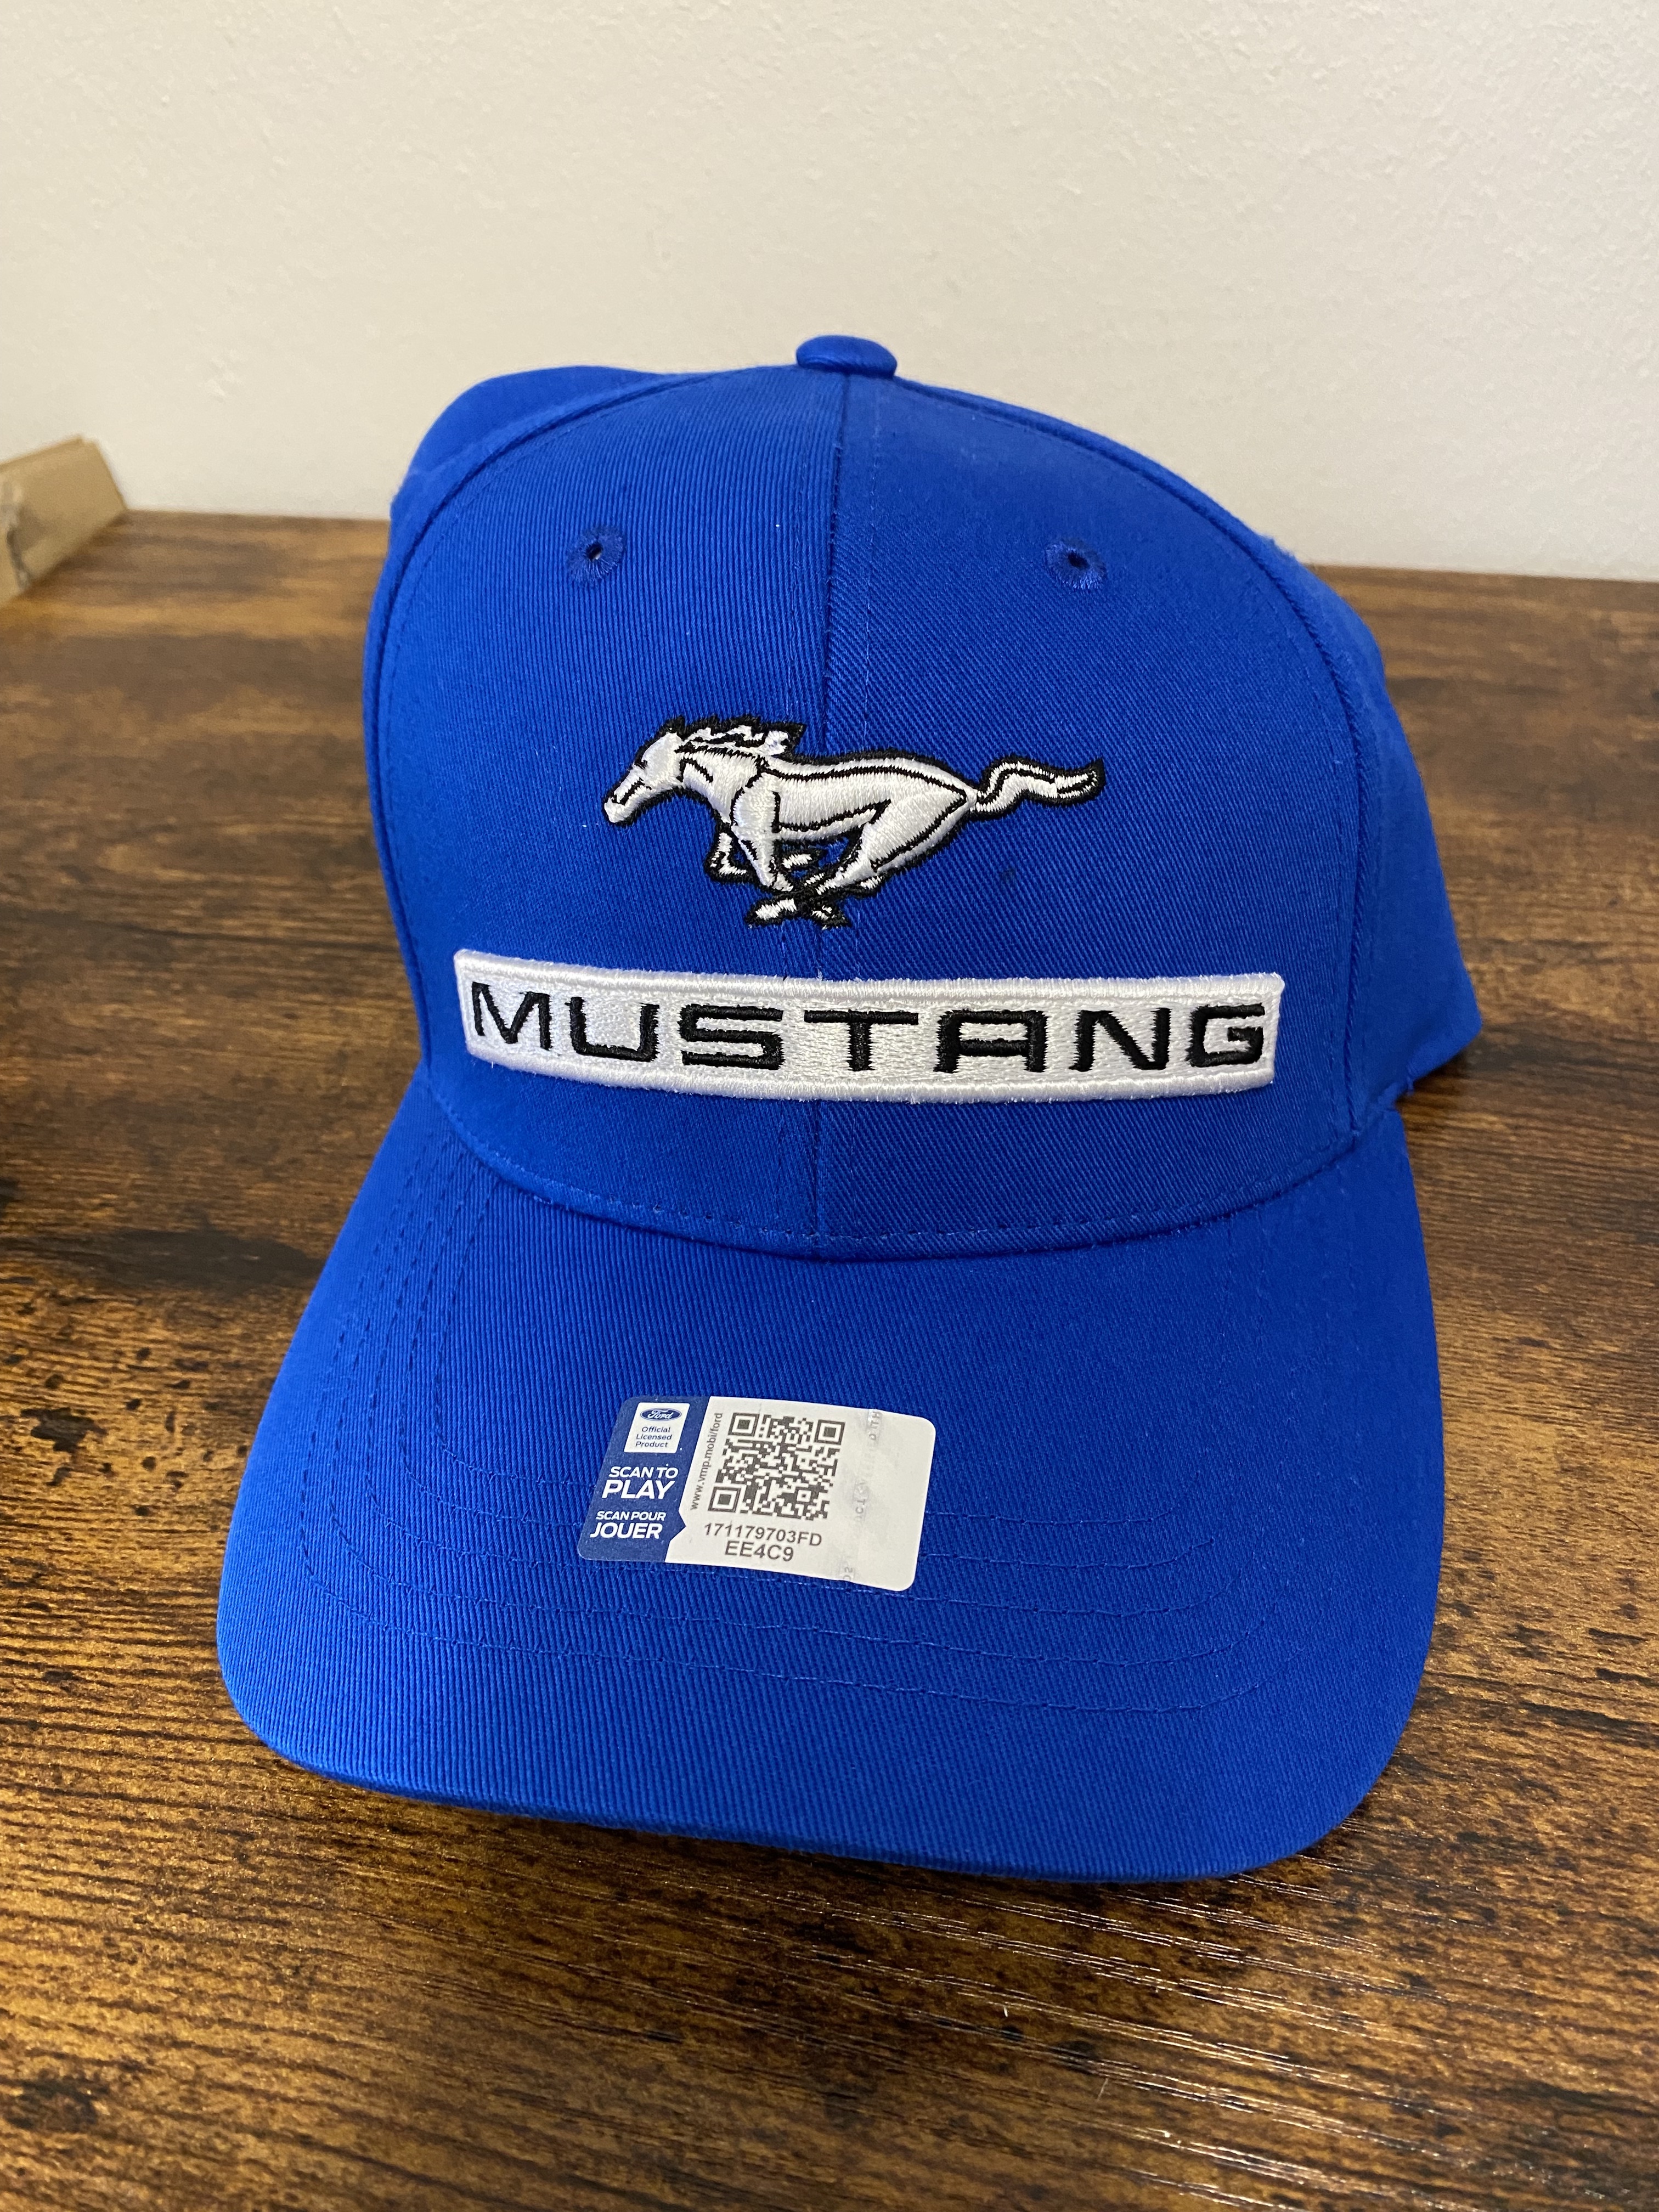 Ford Mustang Baseball Cap blau Running Horse mit Mustang Schriftzug vorne